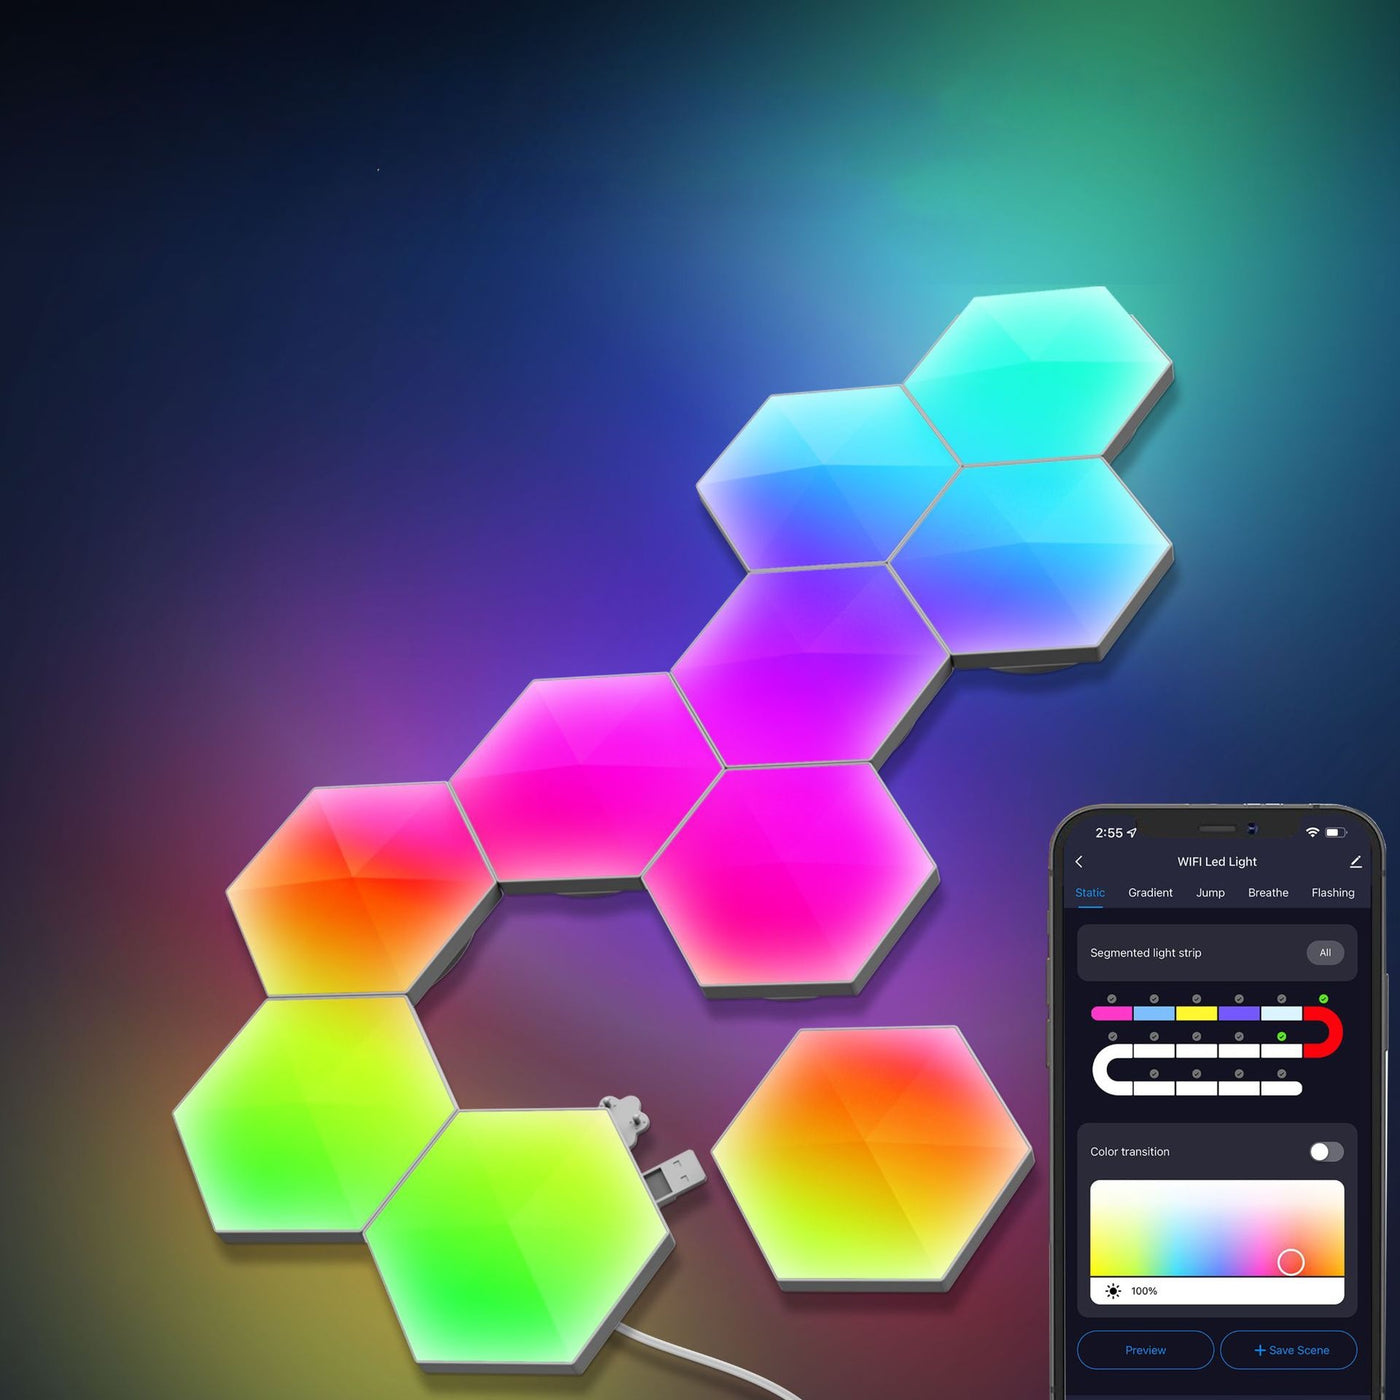 Nordeco Symphony Honeycomb Hexagonal Lamp | WiFi Smart Type